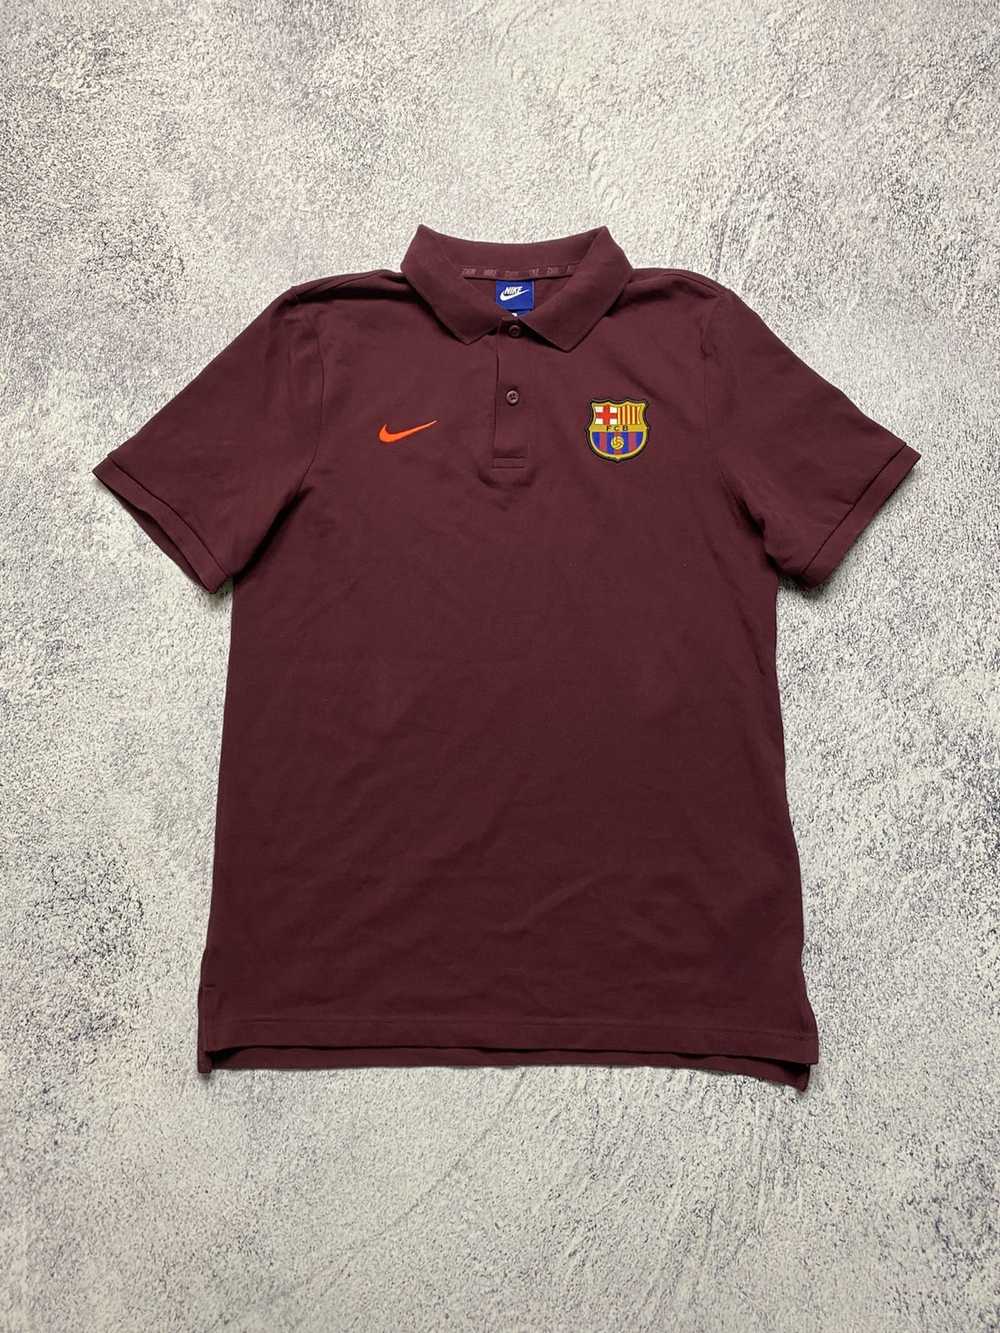 Nike × Soccer Jersey × Vintage Nike Team Barcelon… - image 1